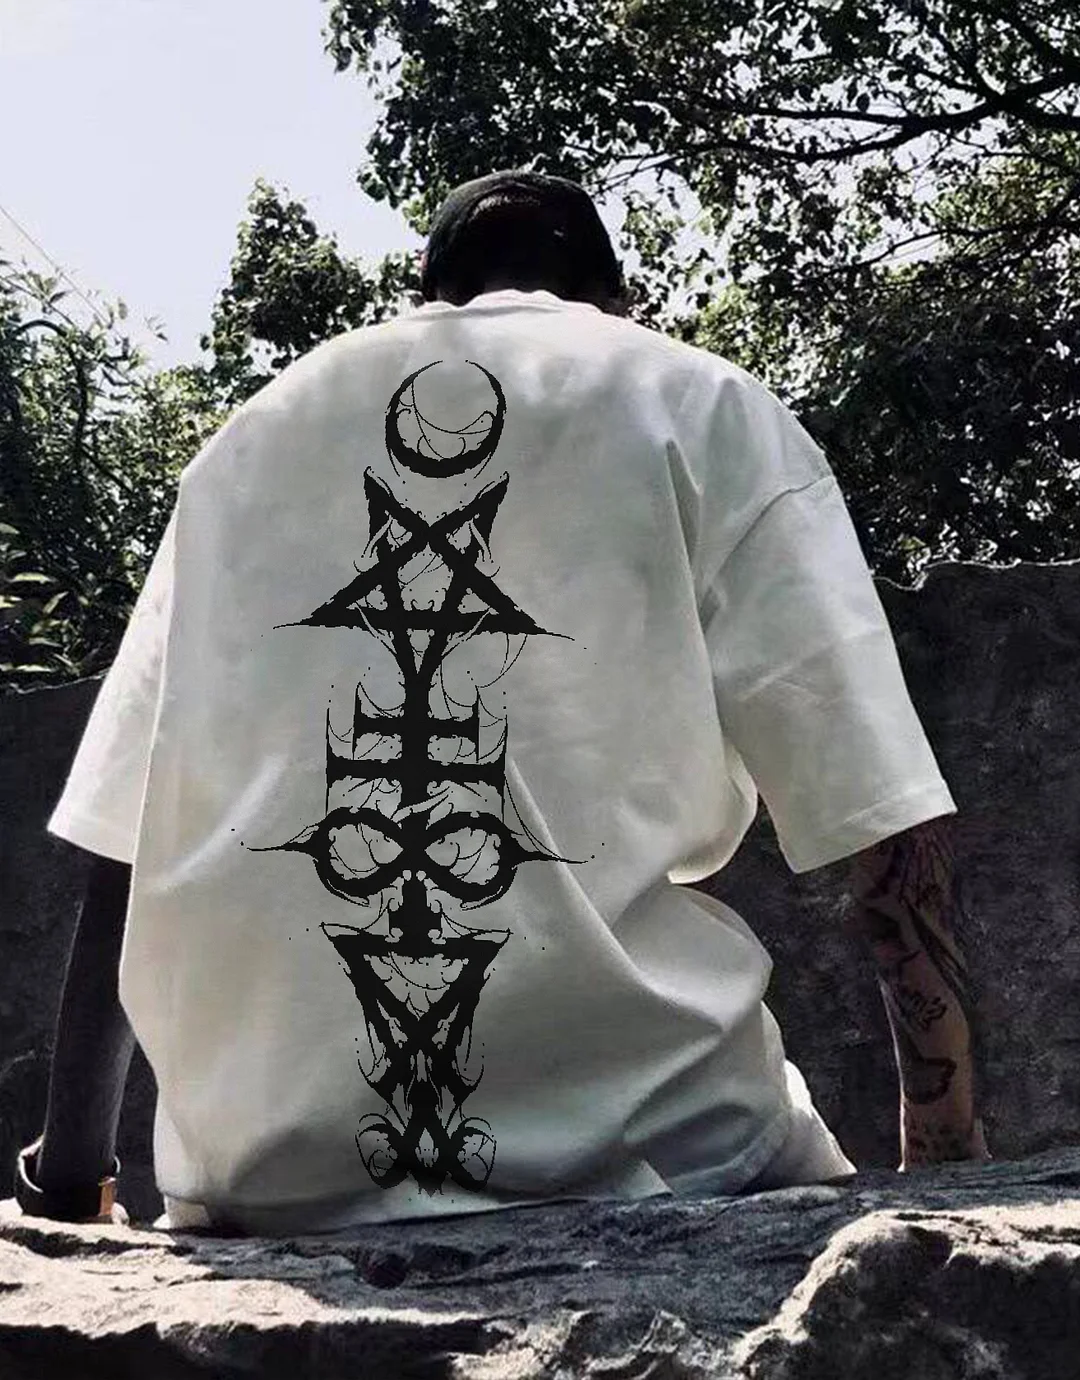 Satan Spell Totem Wizard Print T-shirt、、URBENIE